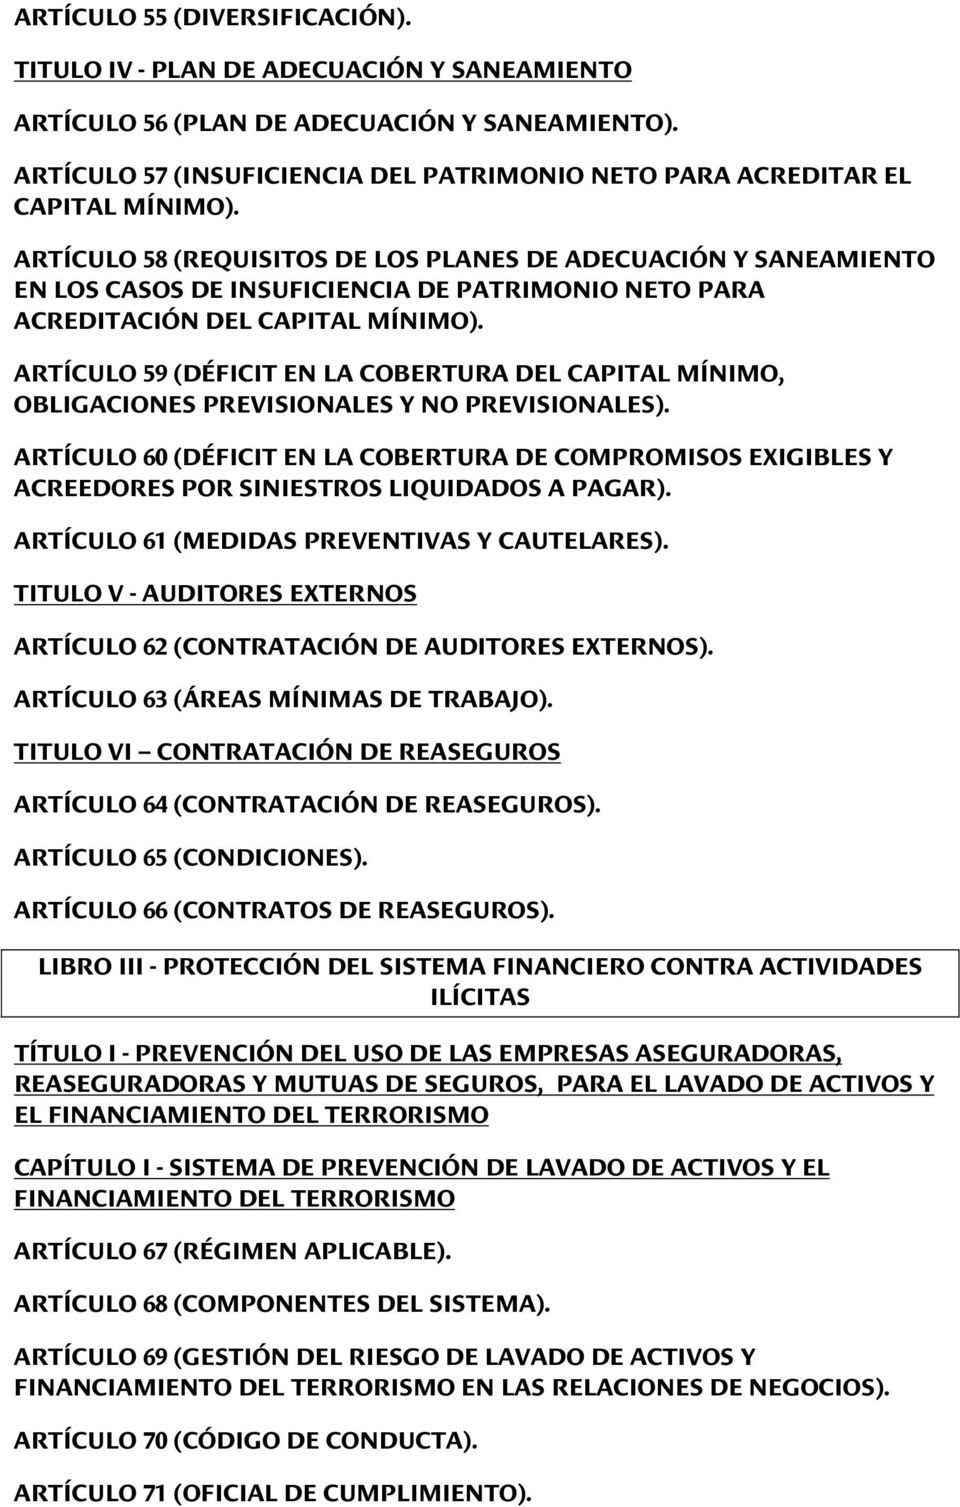 ARTÍCULO 58 (REQUISITOS DE LOS PLANES DE ADECUACIÓN Y SANEAMIENTO EN LOS CASOS DE INSUFICIENCIA DE PATRIMONIO NETO PARA ACREDITACIÓN DEL CAPITAL MÍNIMO).